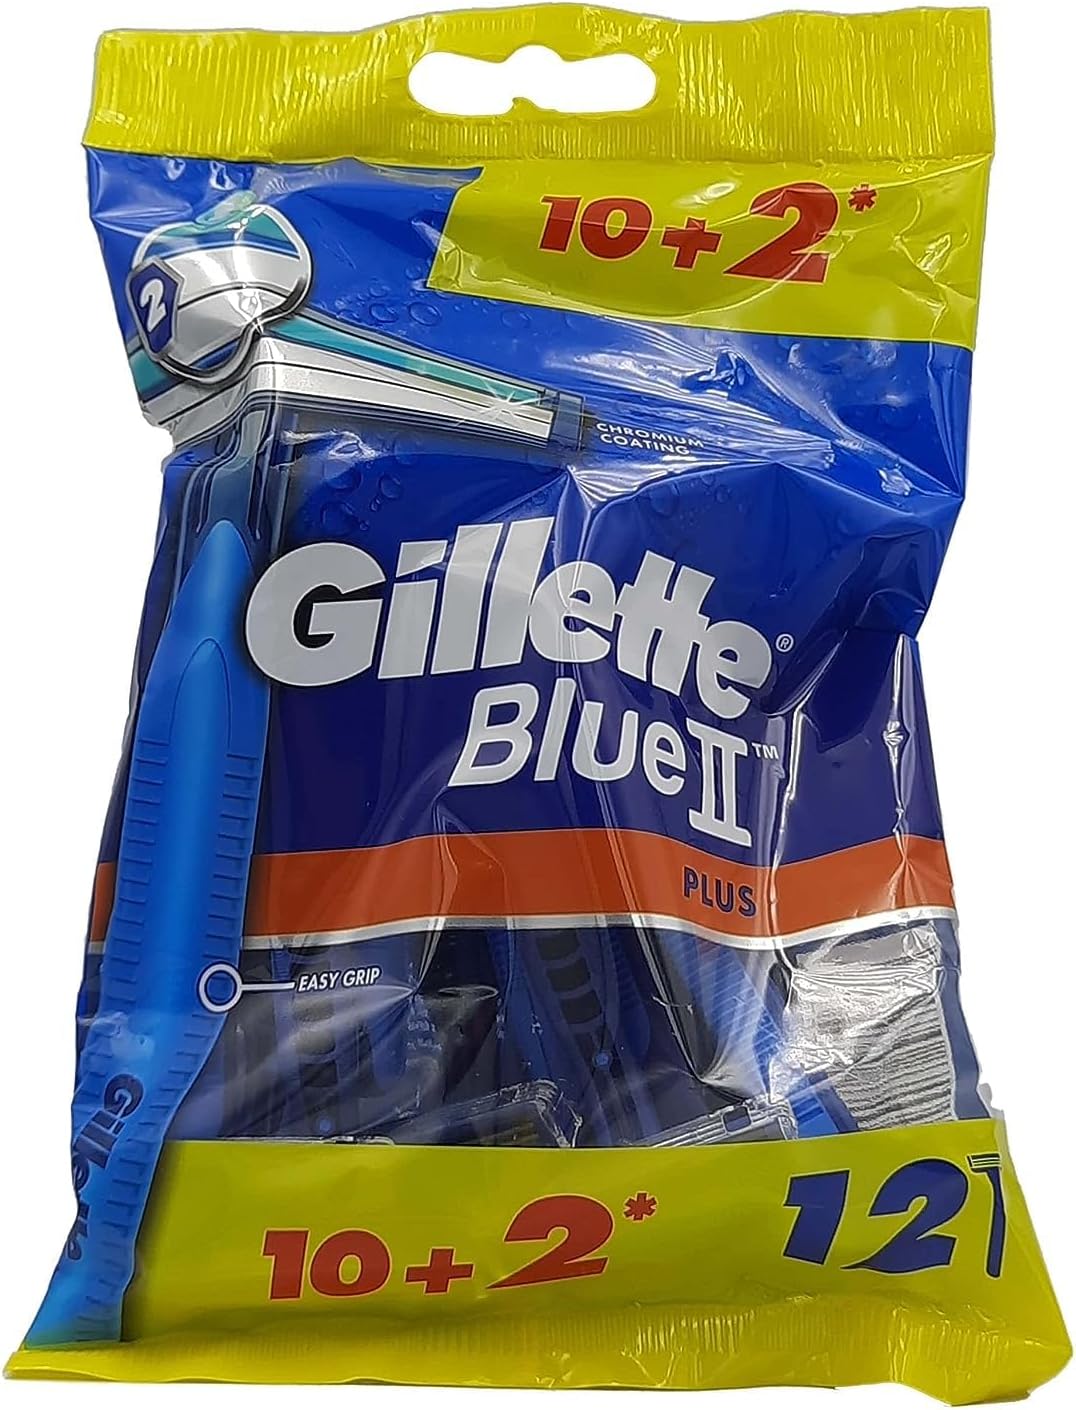 GILLETTE BLUE 2 PLUS  10+2